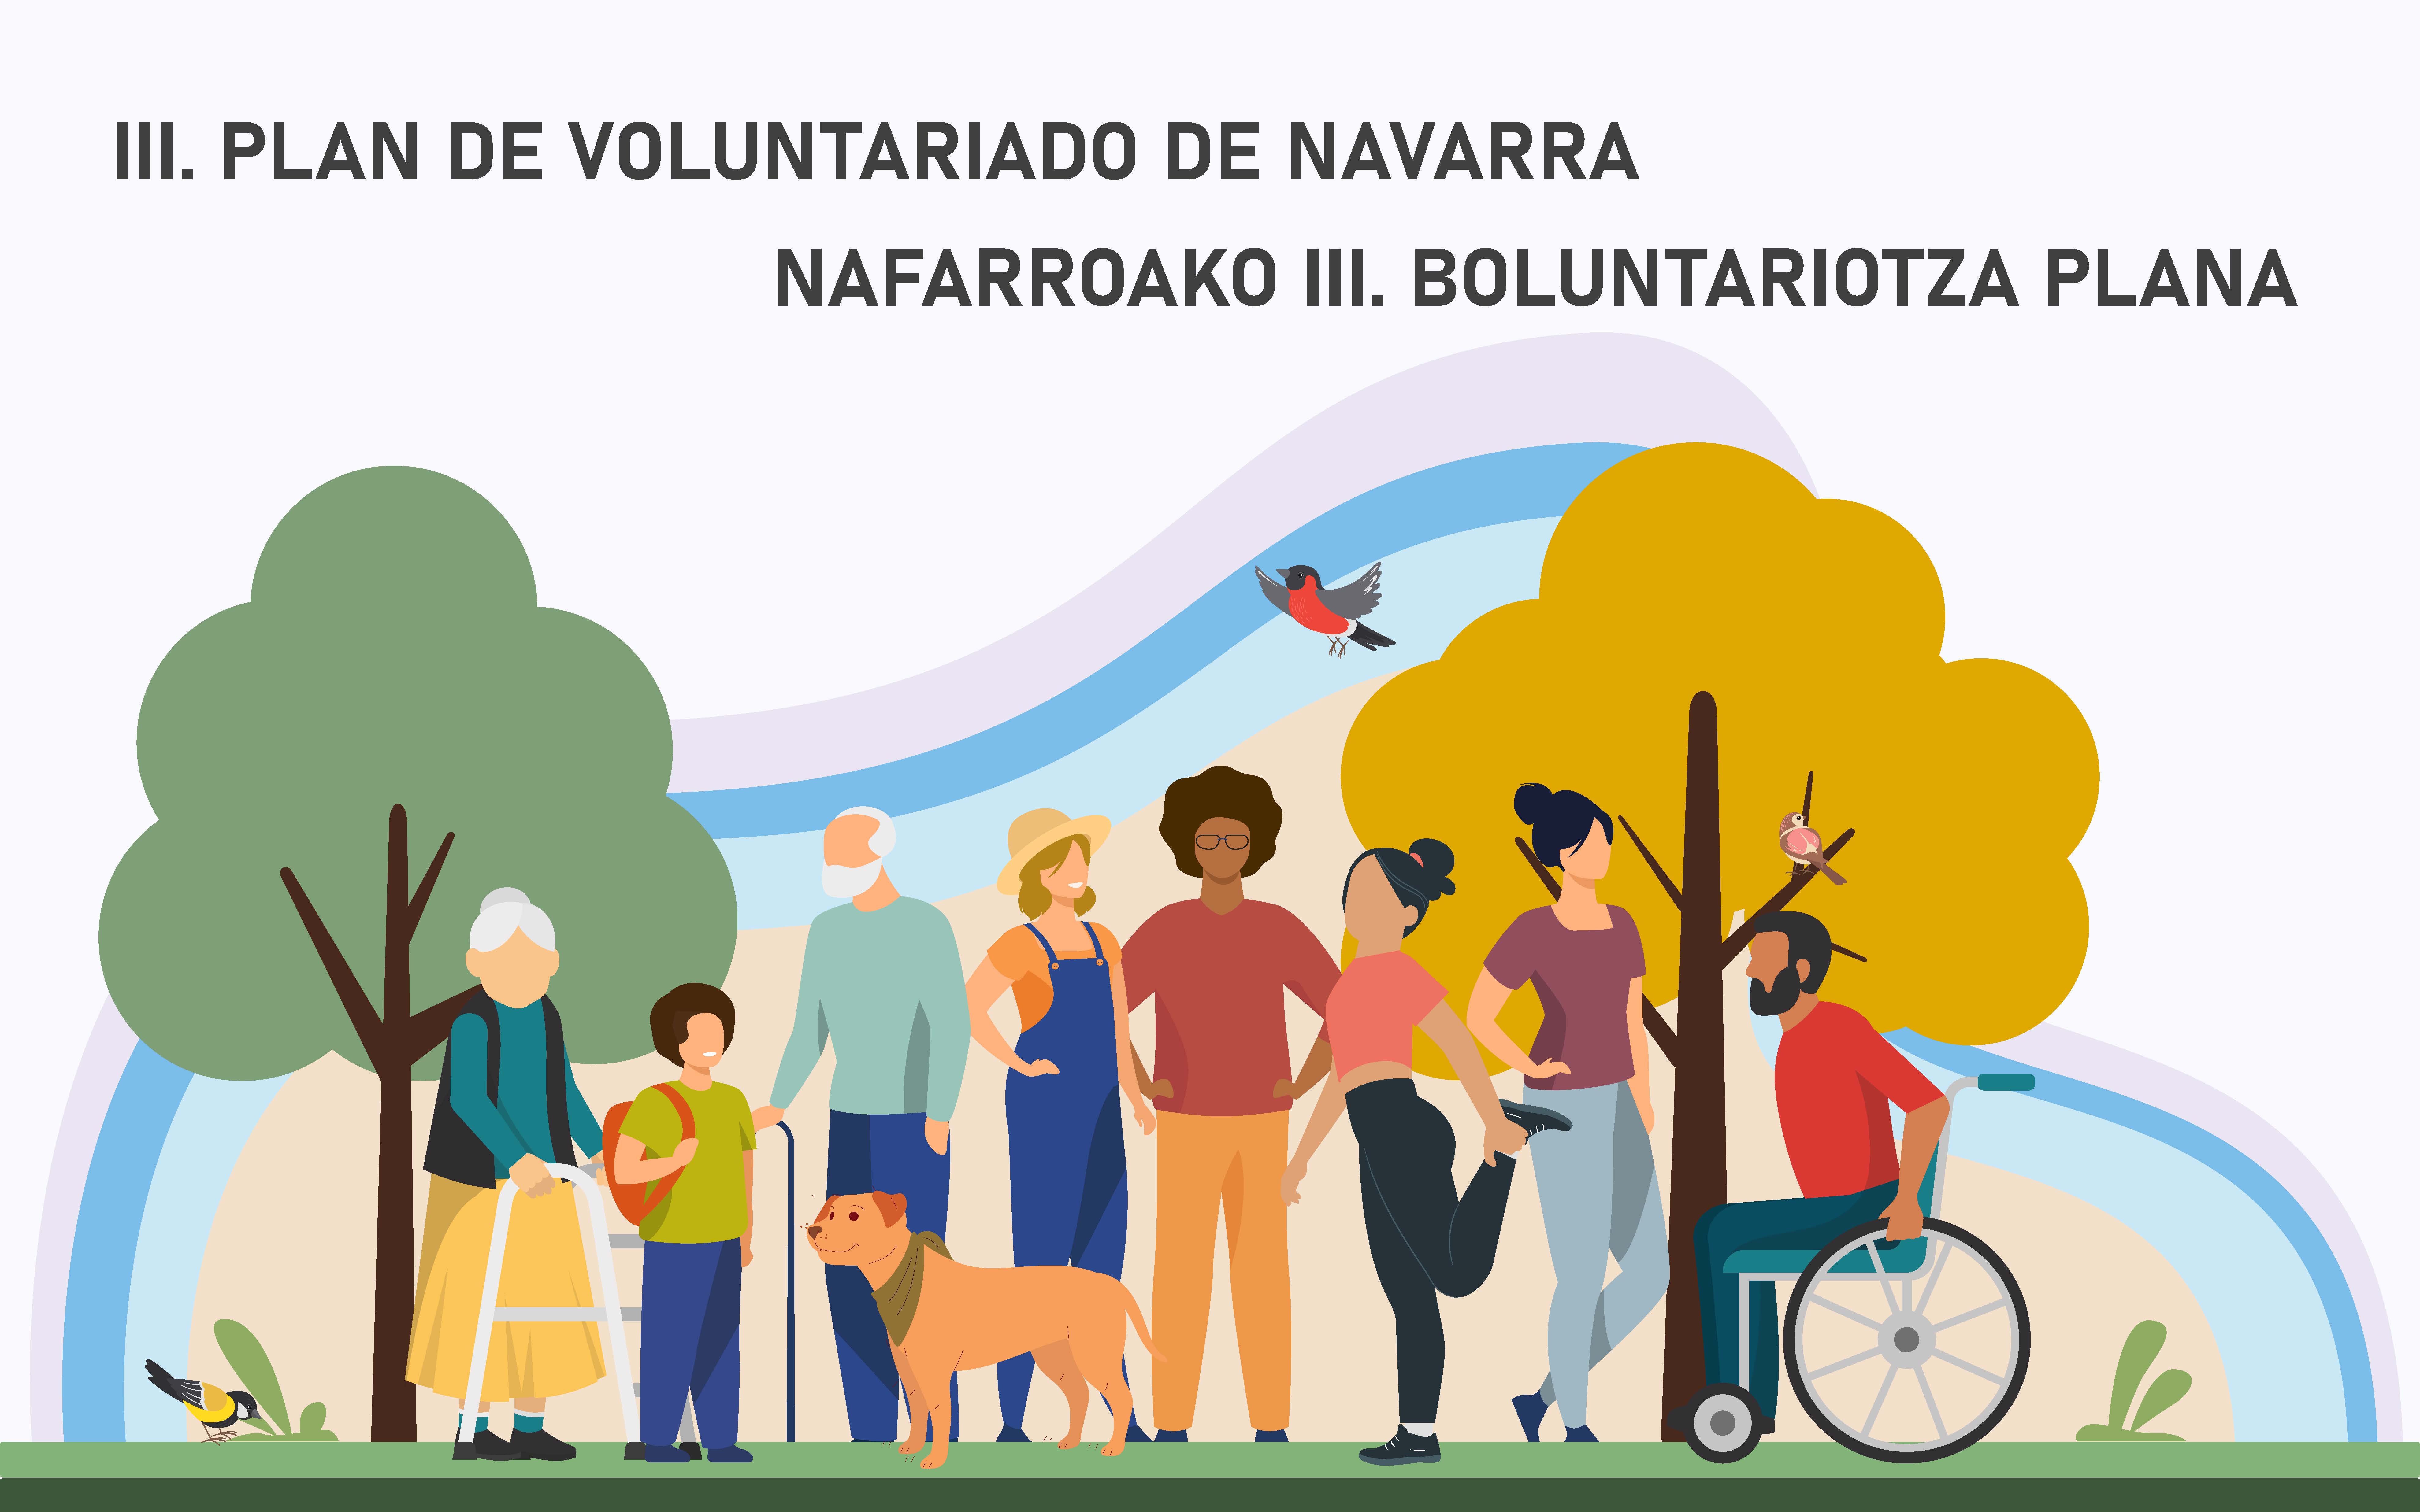 III. Plan de Voluntariado de Navarra